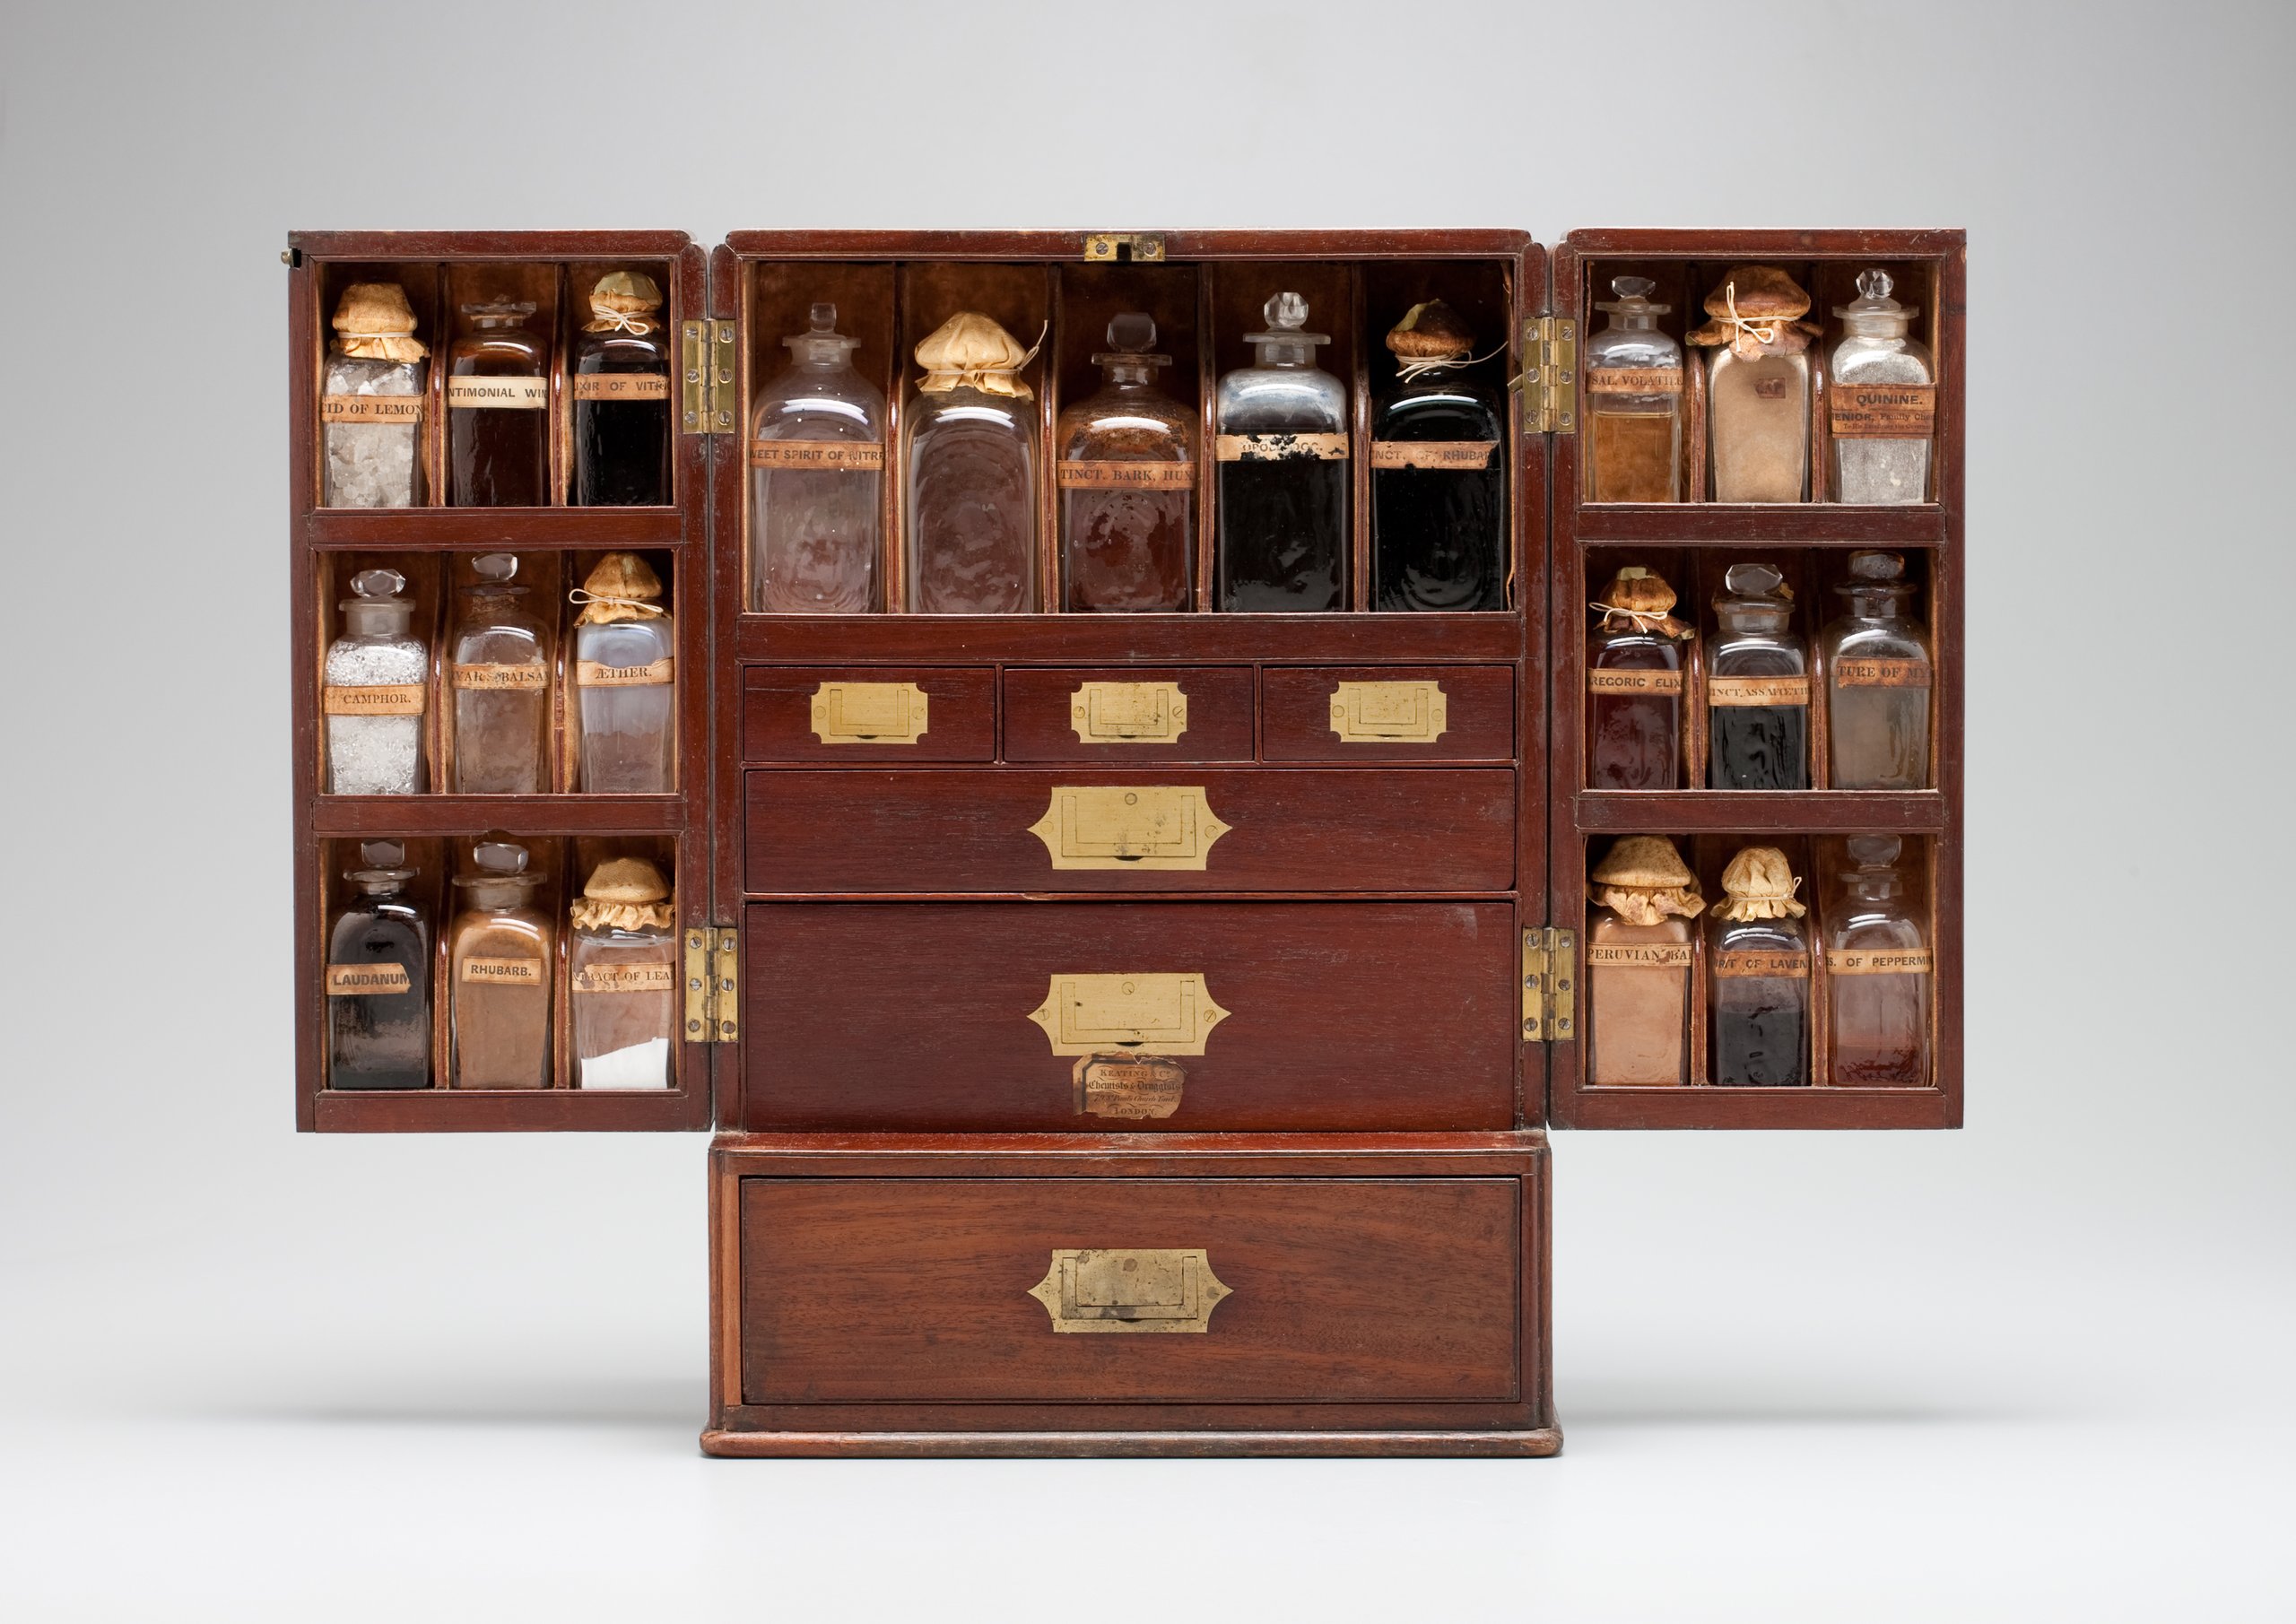 Domestic medicine chest